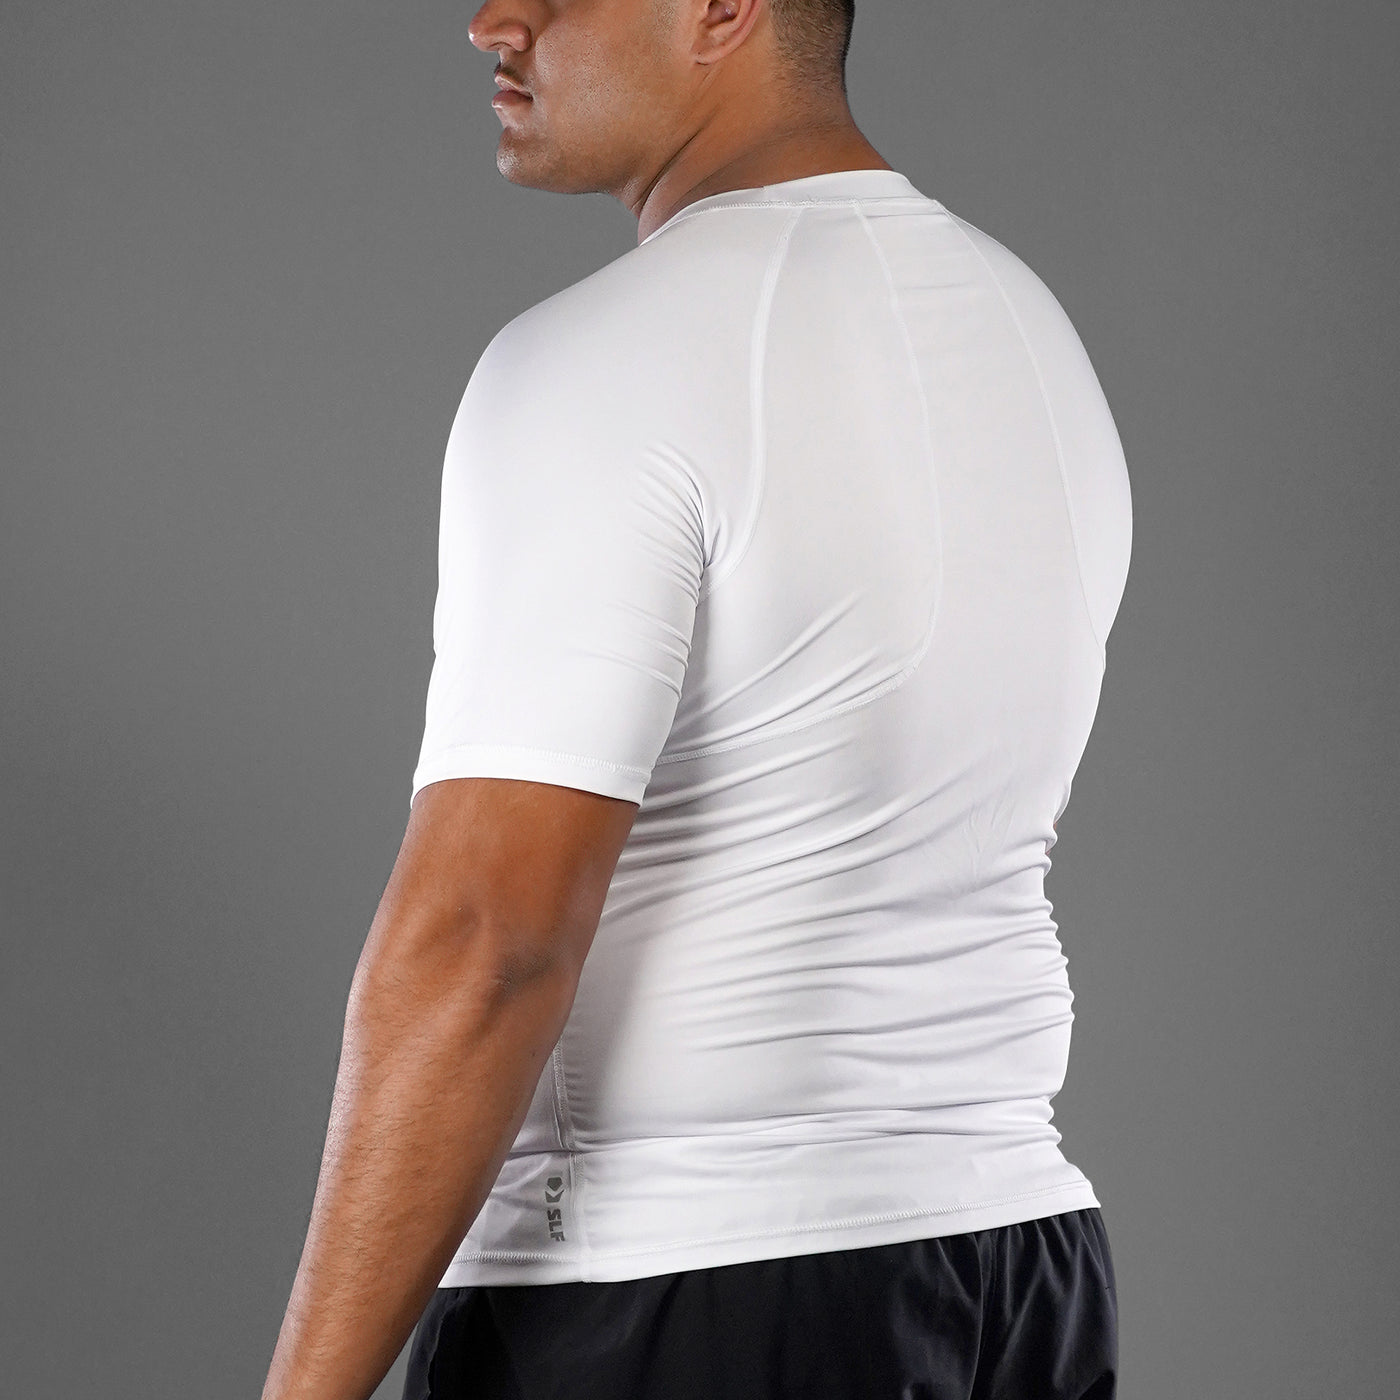 Basic White Quick Dry Shirt - Big